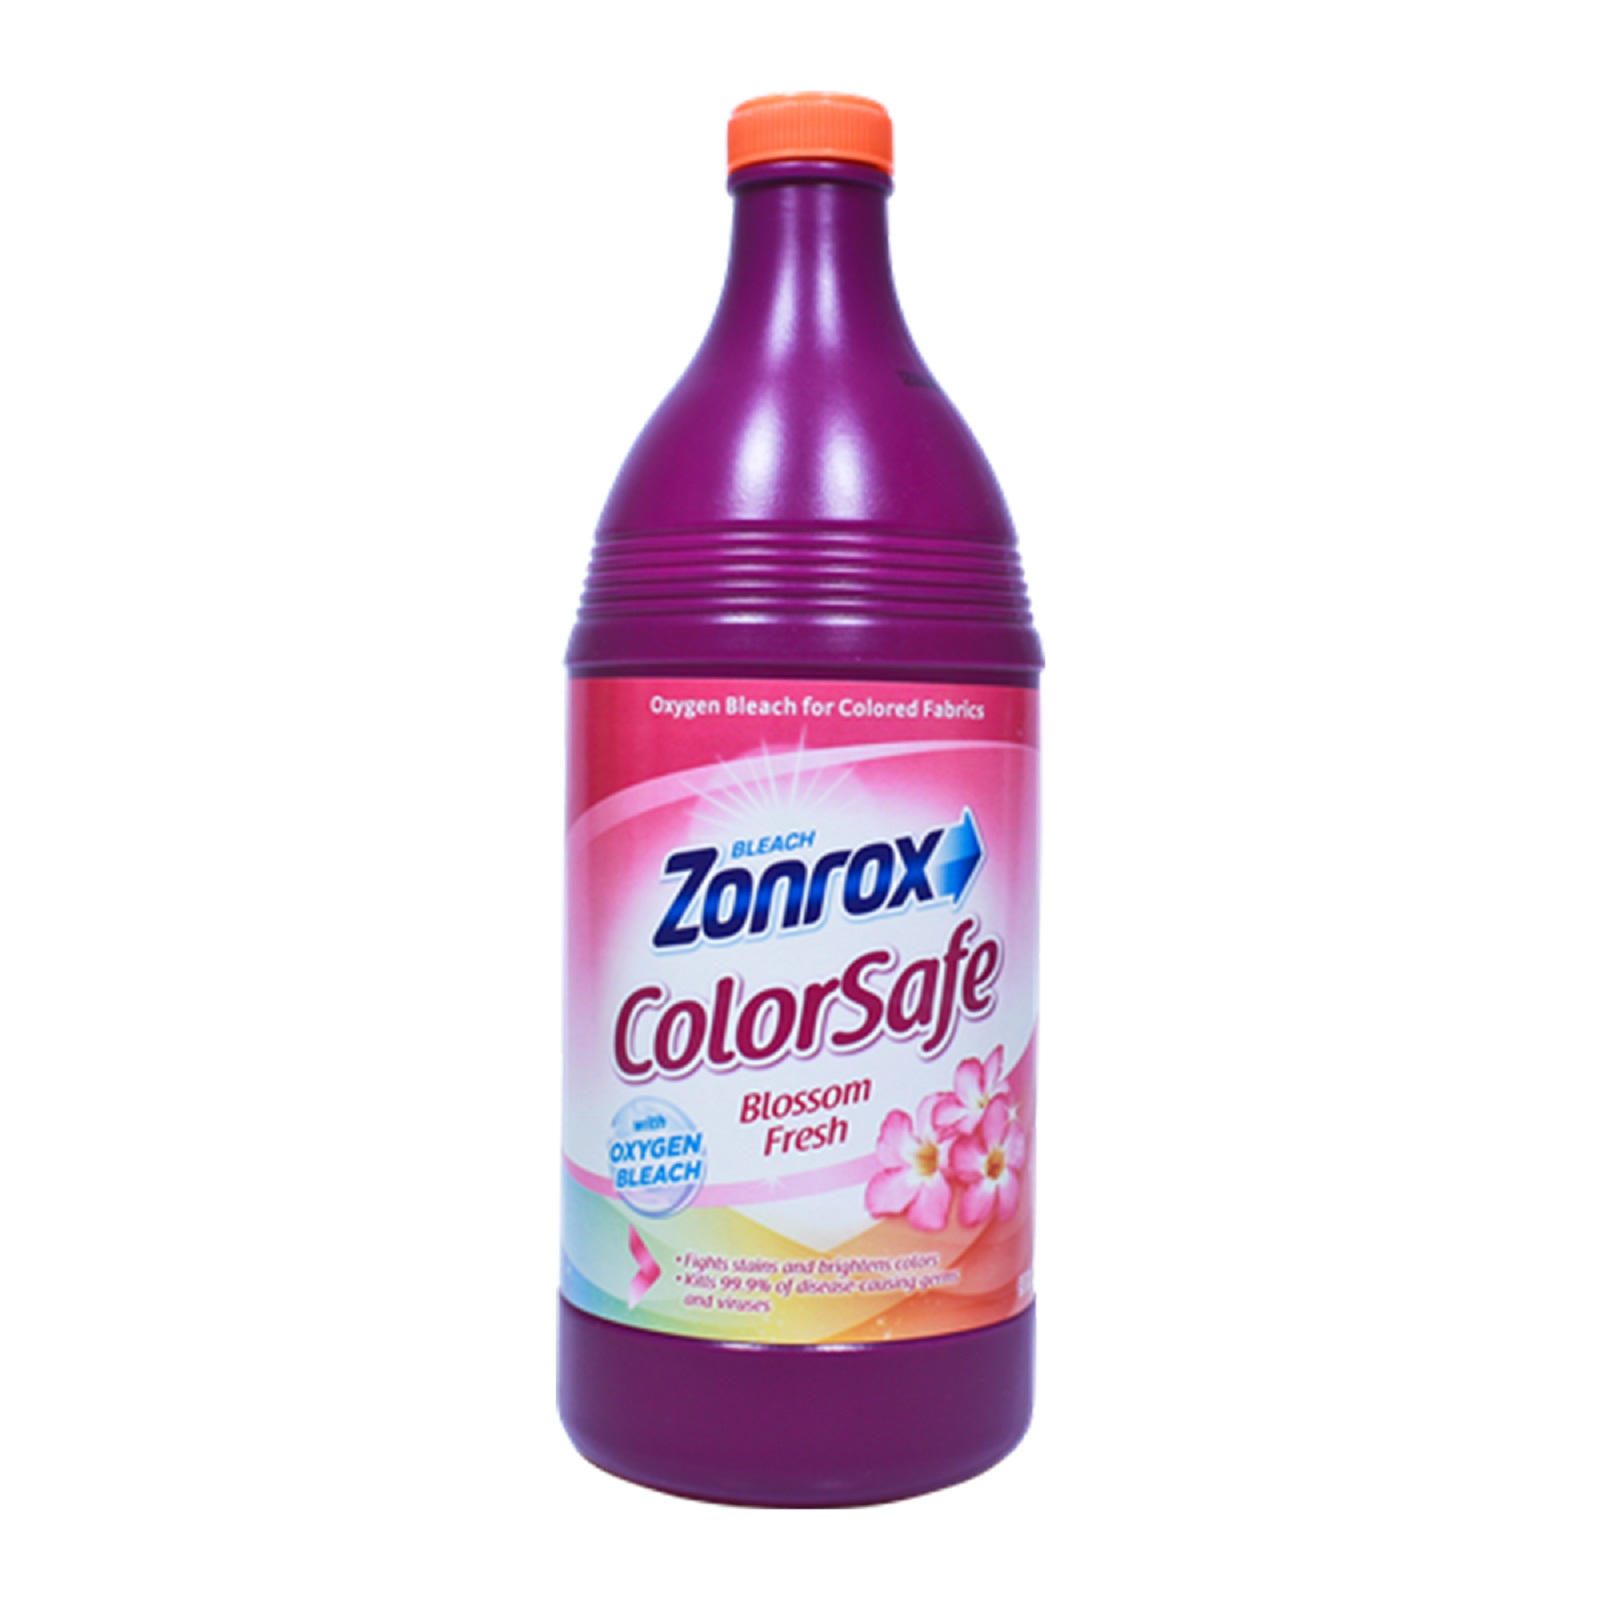 Zonrox Colorsafe Blossom Fresh 900ml Carlo Pacific